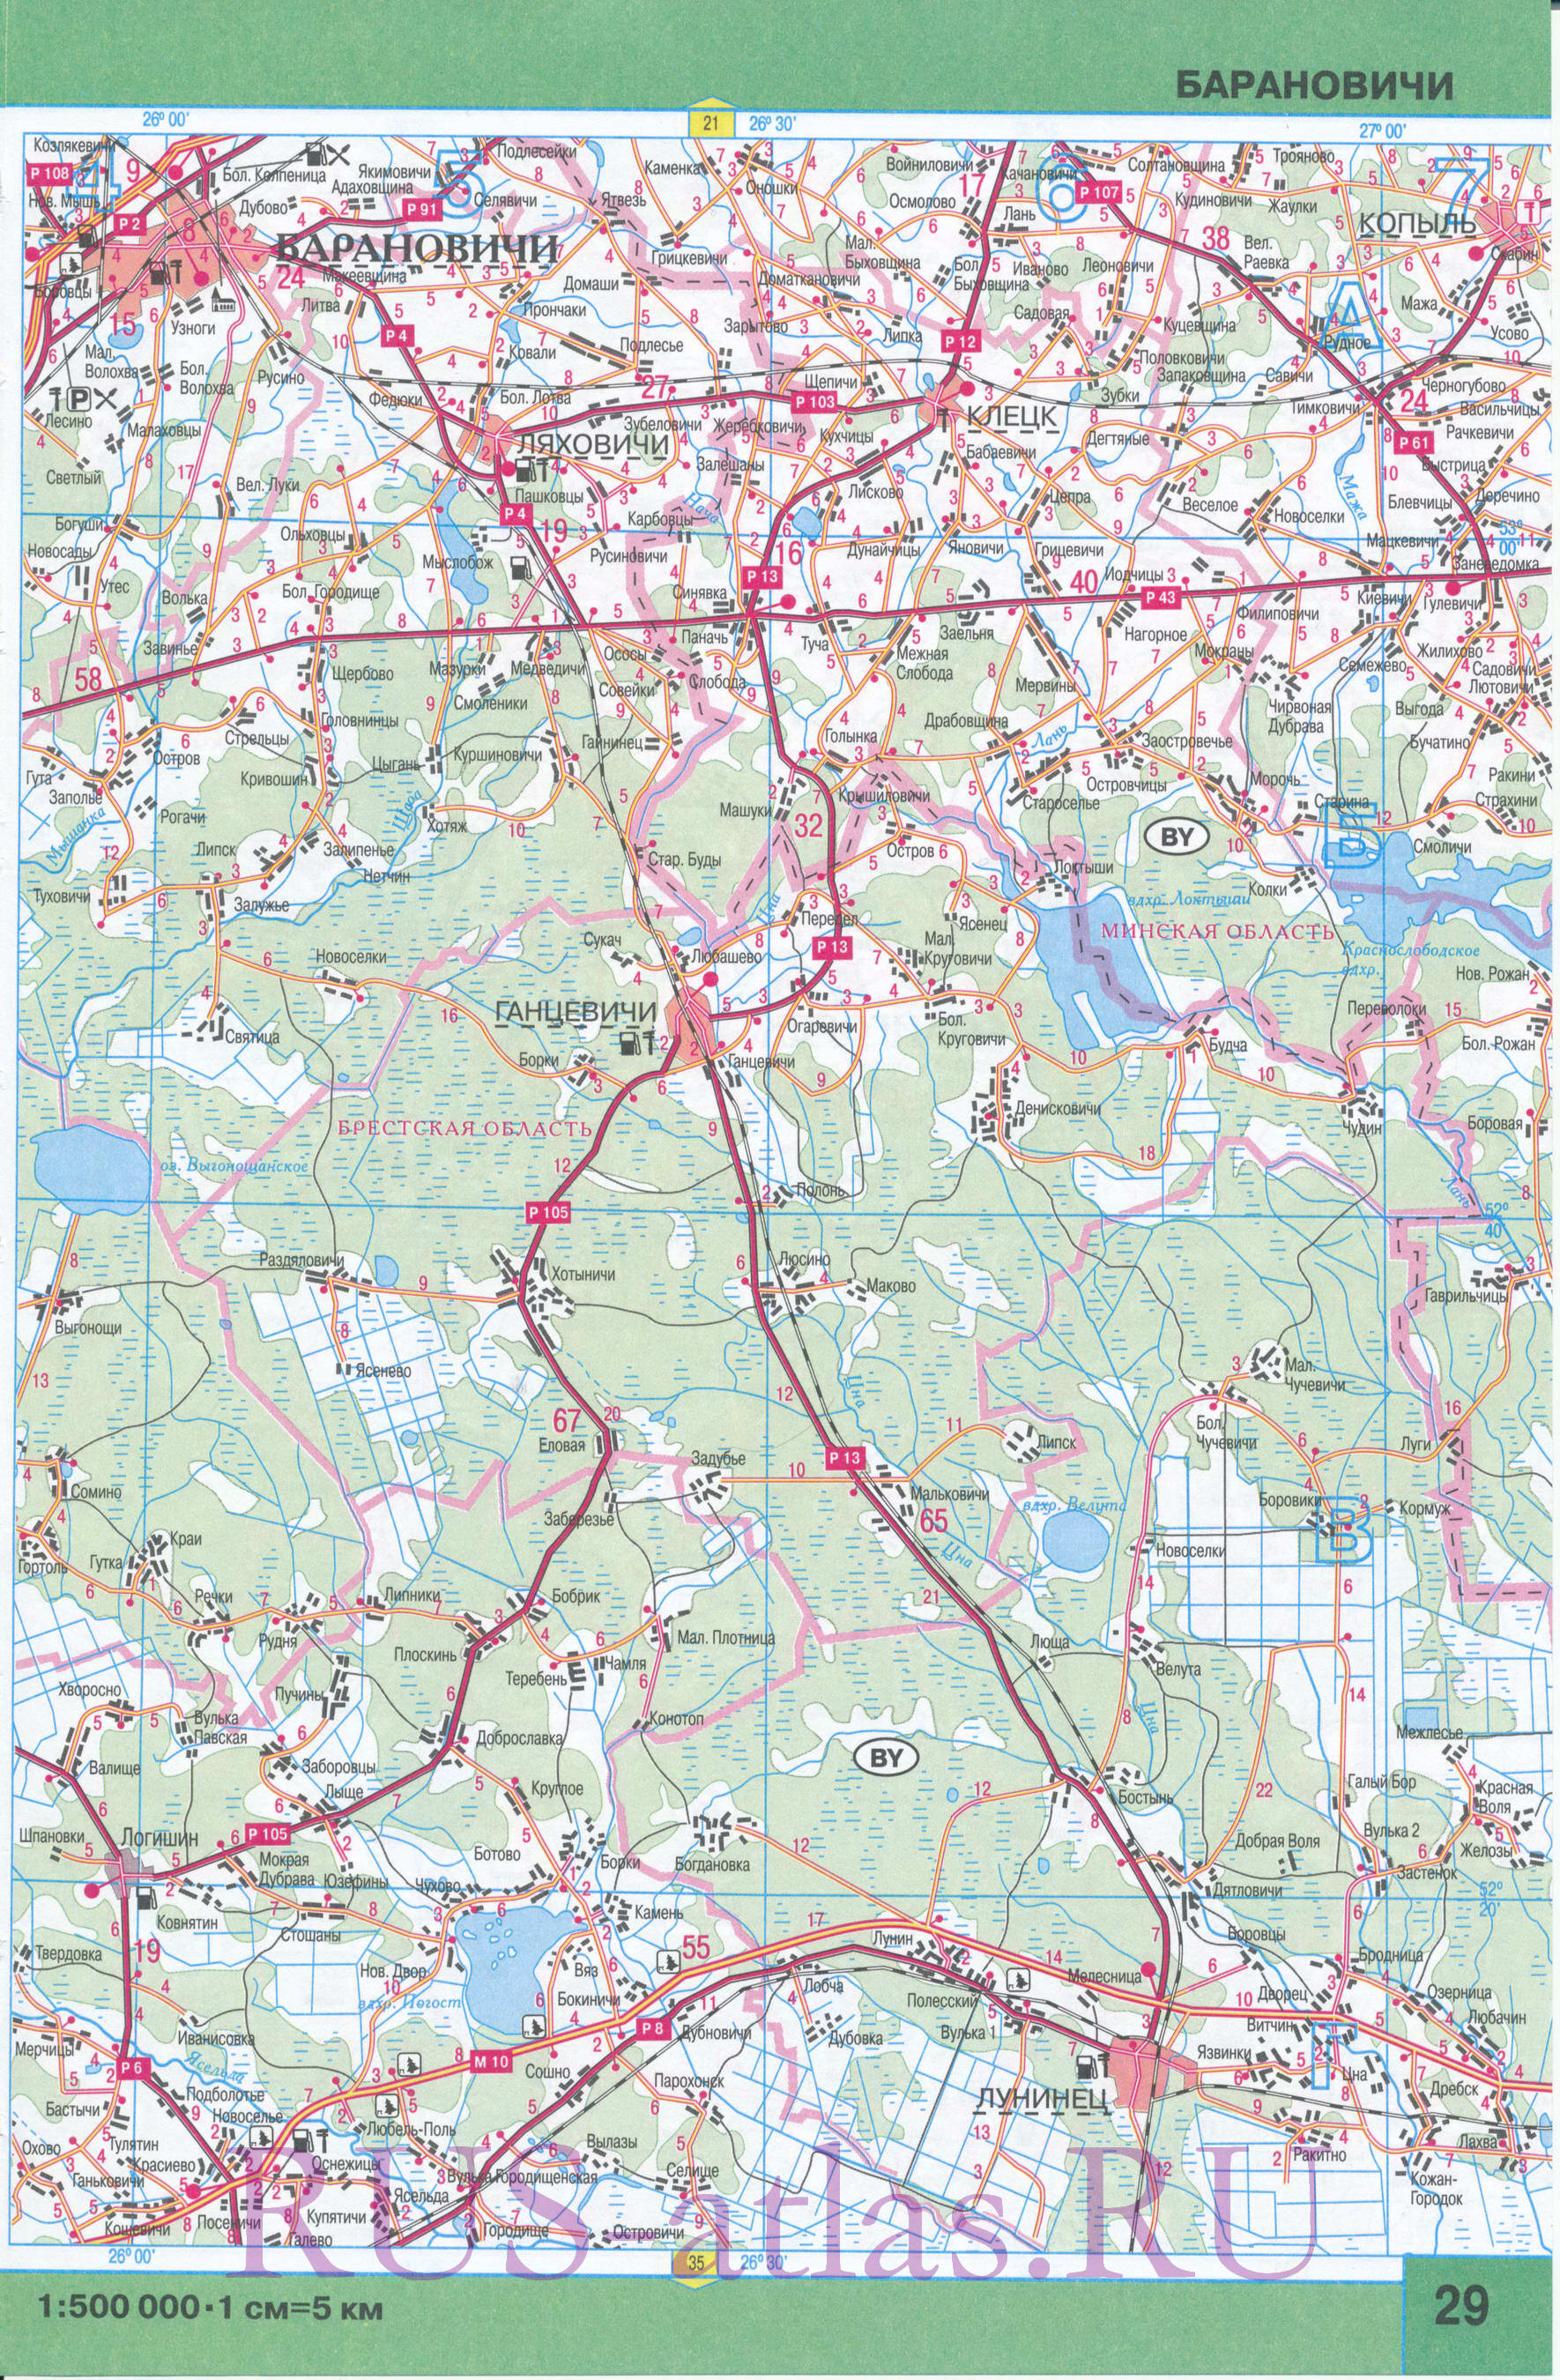 Карта Брестской области. Подробная карта Брестской области с городами и дорогами. Площадь Брестской обл 32800 кв км, население 1433100 человек, C0 - 